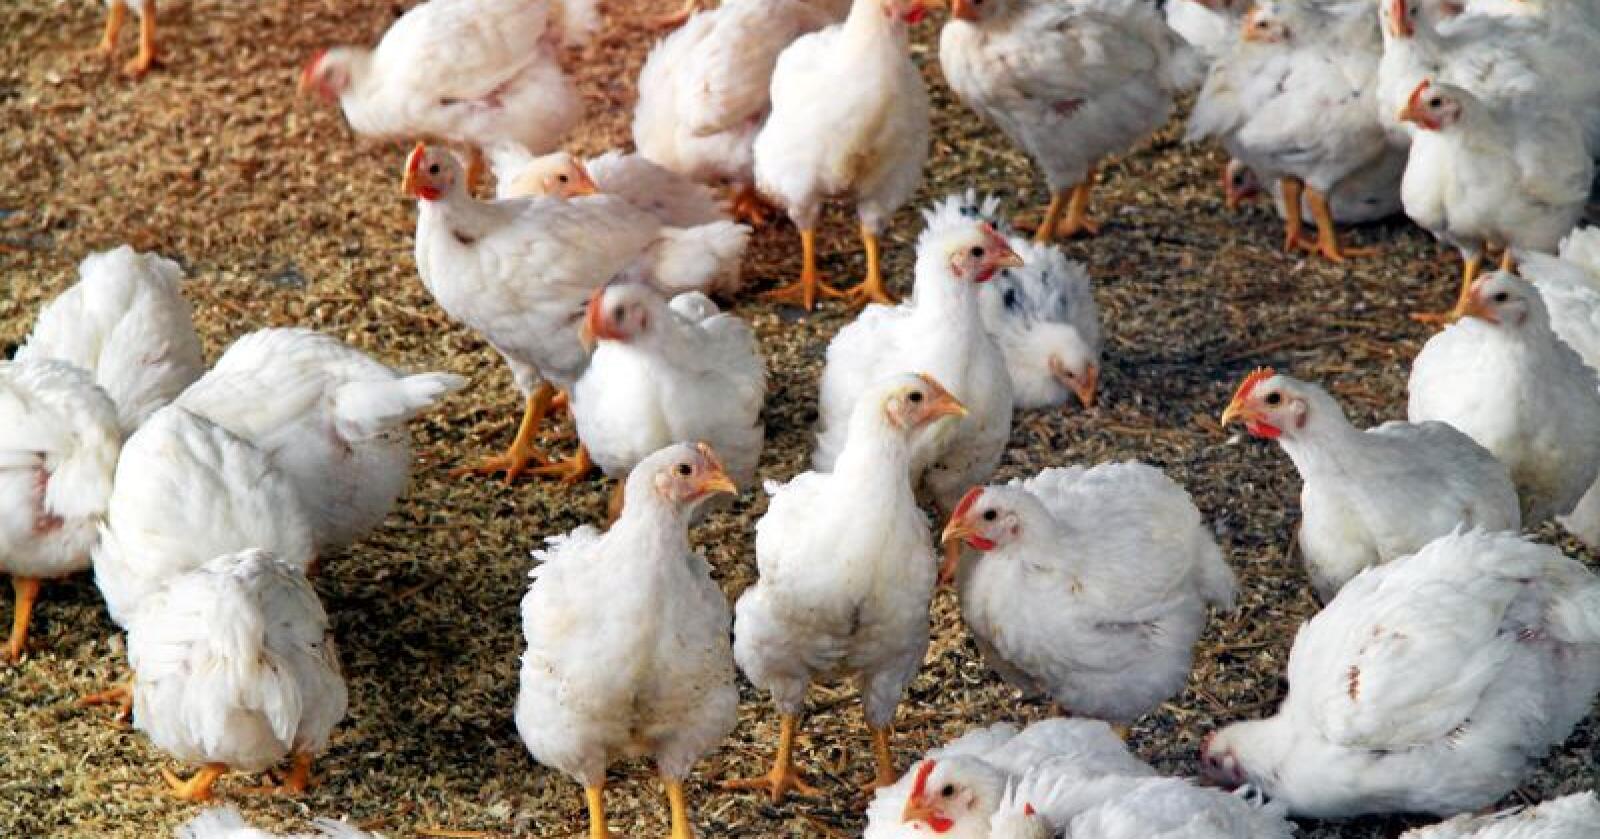 Mangel på karbondioksid gjør det vanskelig for britiske kyllingprodusenter å få bedøvet dyrene før slakt. Foto: Mostphotos